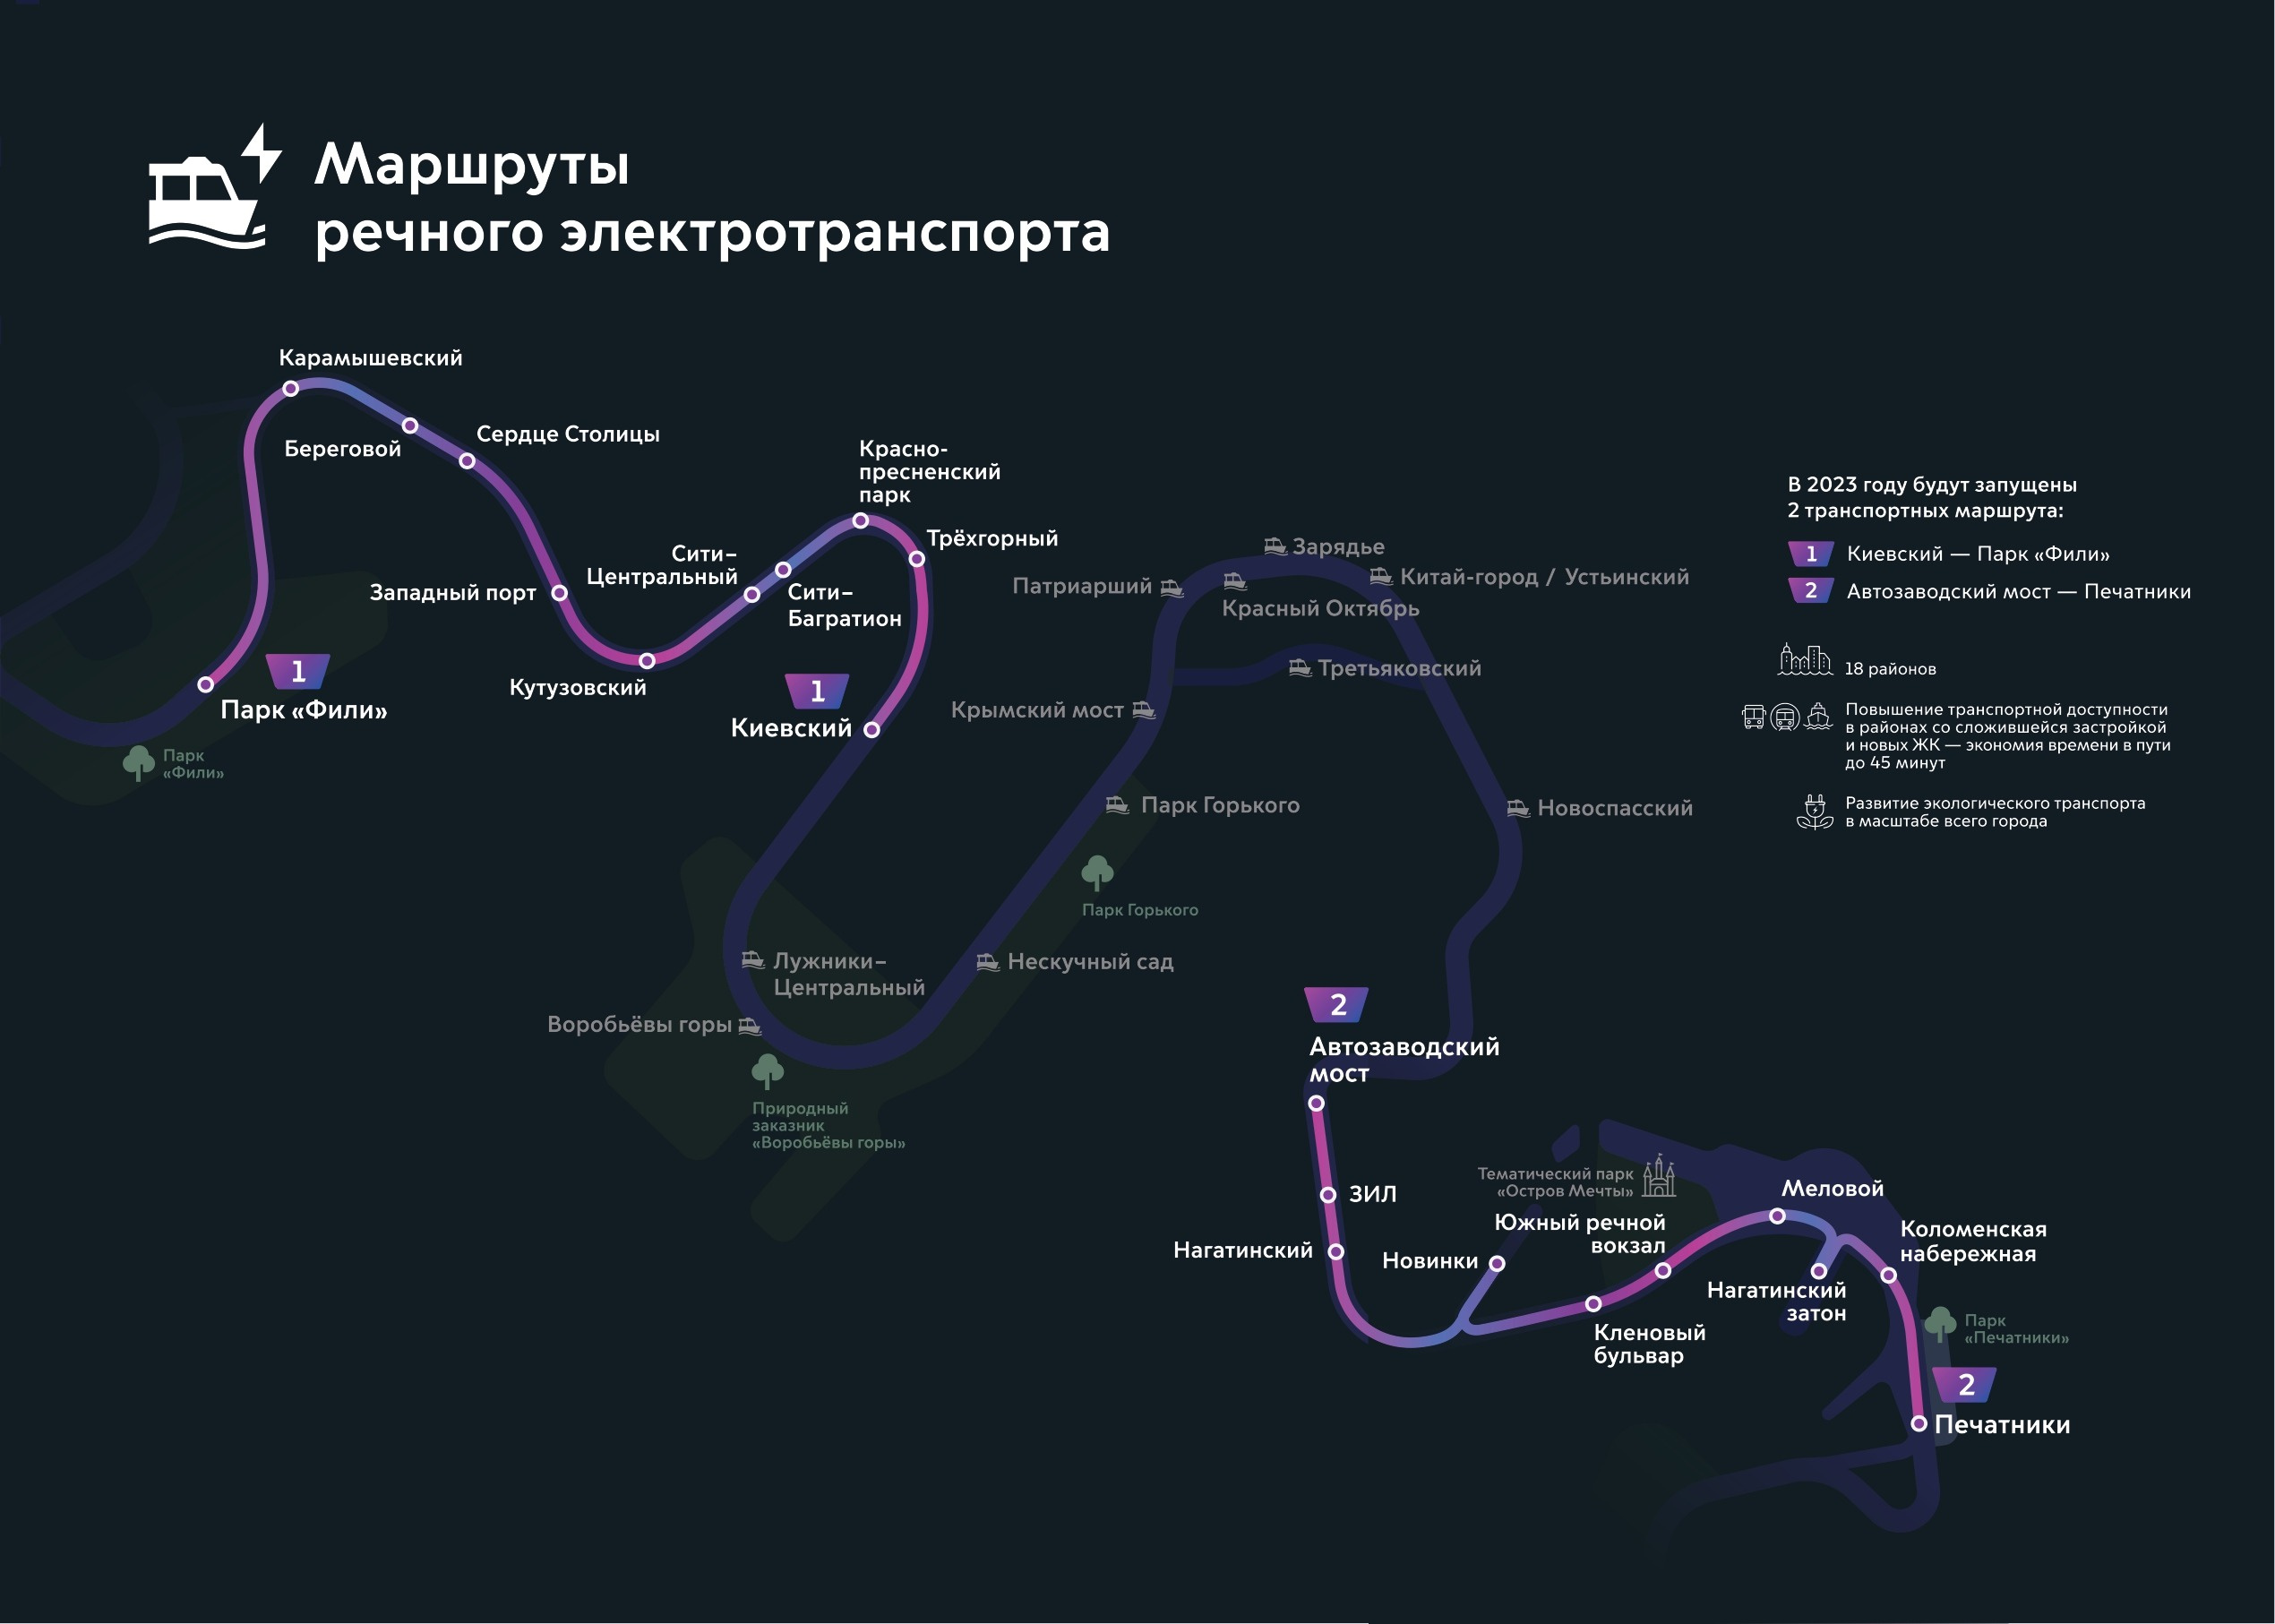 По Москве-реке начинают ходить первые электротрамваи: возобновление работыгородского речного транспорта Москвы, фото речных трамвайчиков,подробности, стоимость, сколько стоит билет на речной трамвай, маршруты -20 июня 2023 - msk1.ru